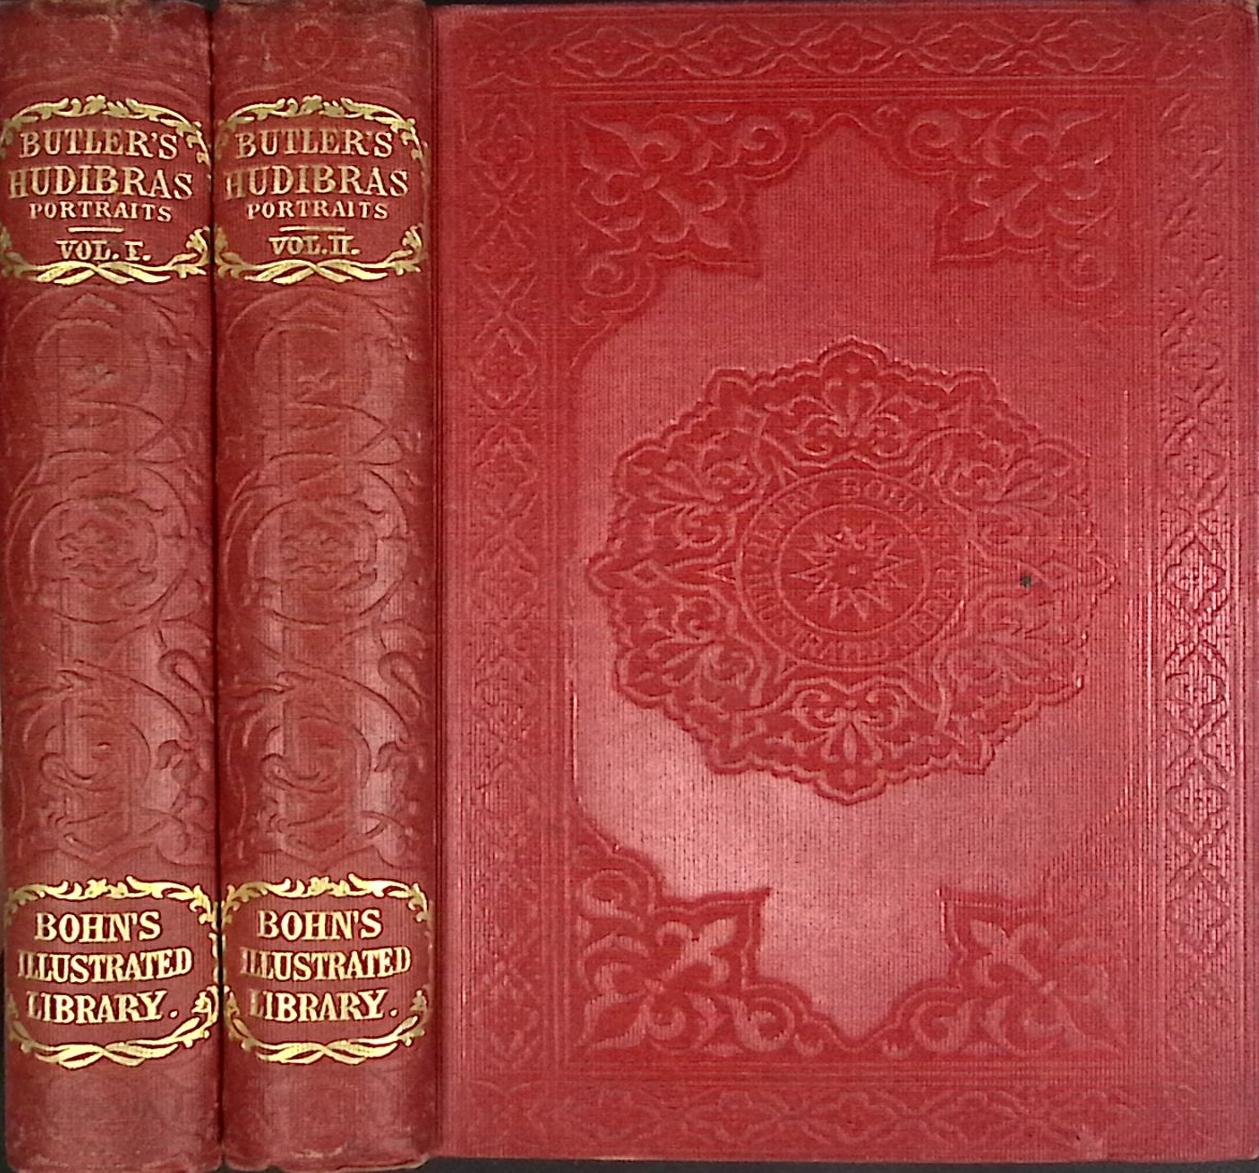 Hudibras. 2 volume set. Bohn's Illustrated Library.